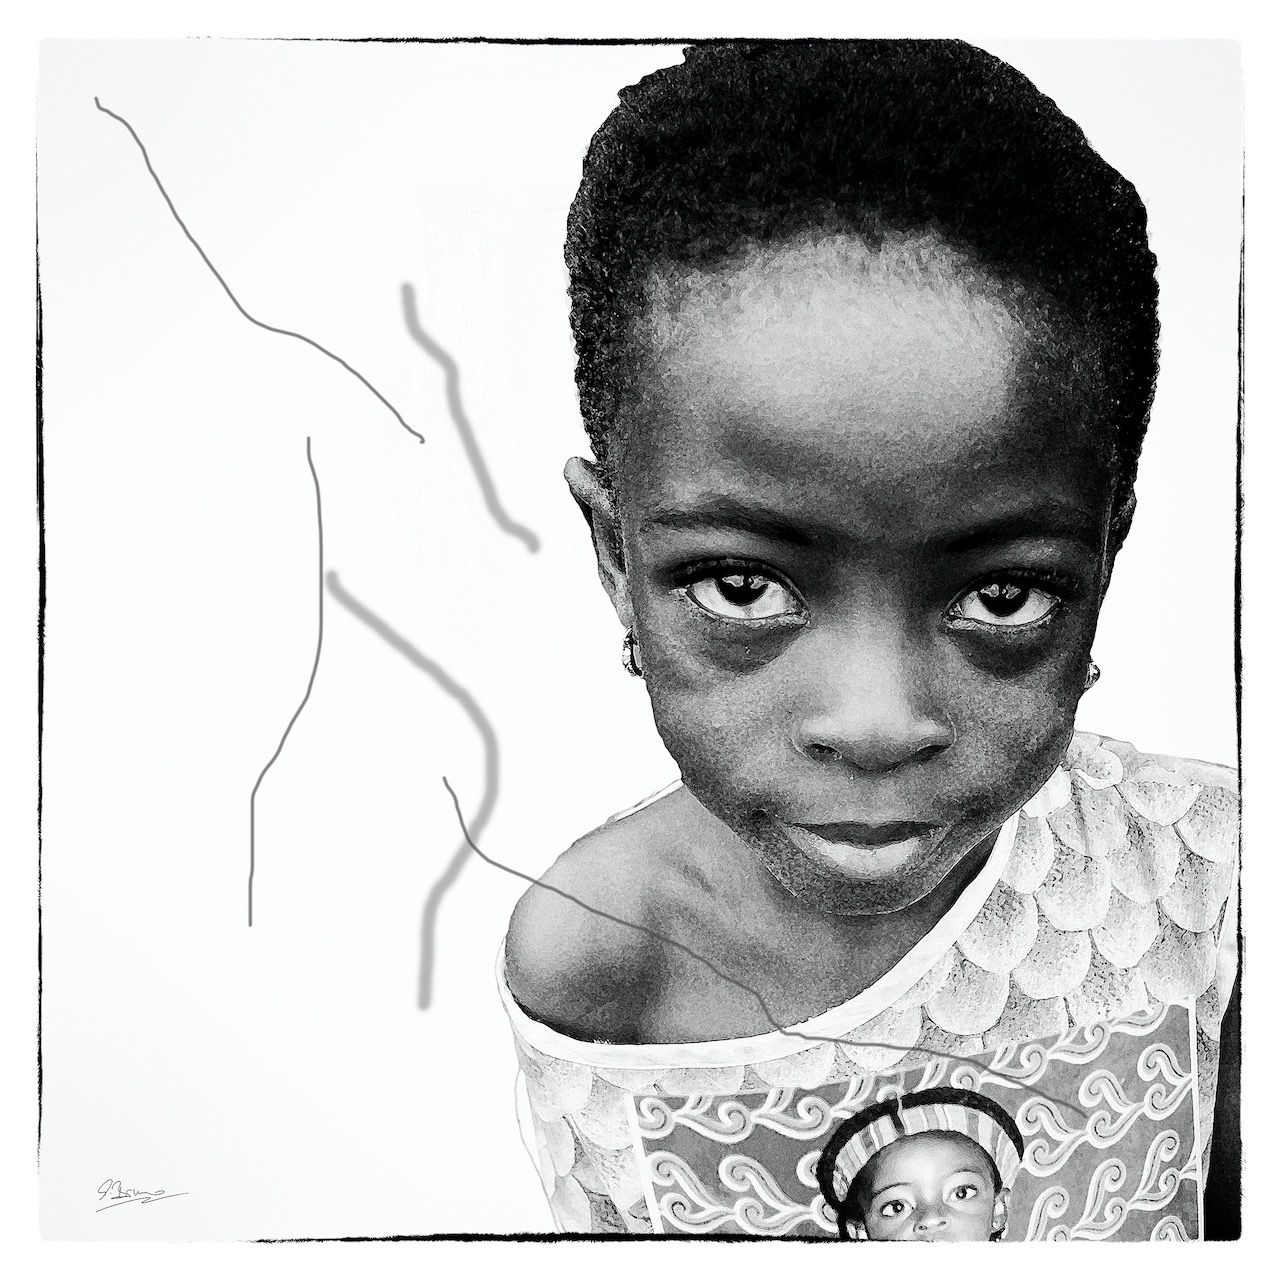 Ute Bruno pintura digital blanco y negro retrato niño africano